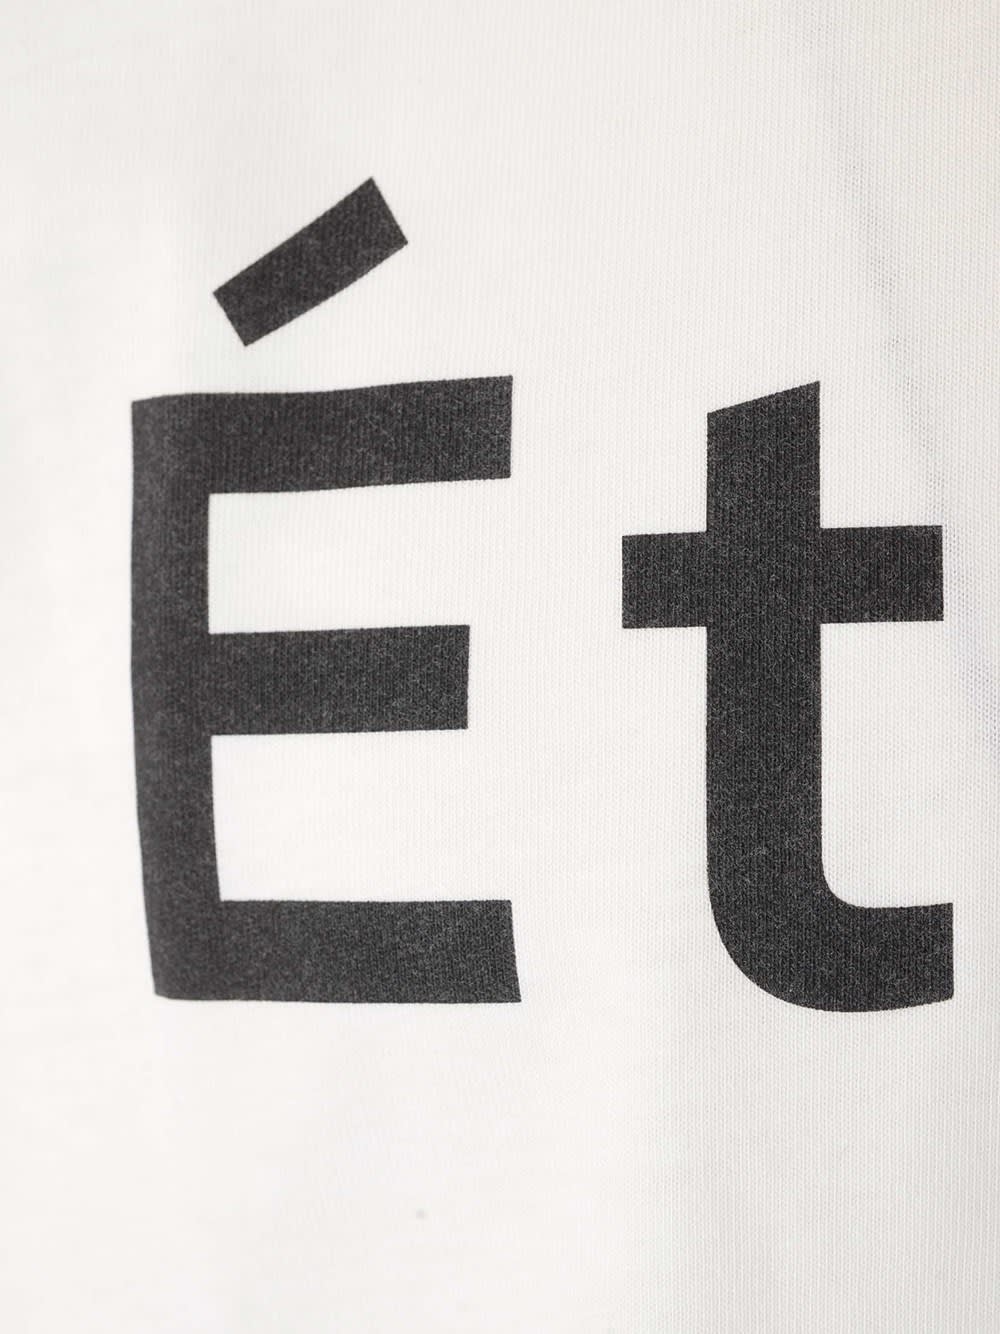 Shop Etudes Studio Cotton T-shirt In Bianco